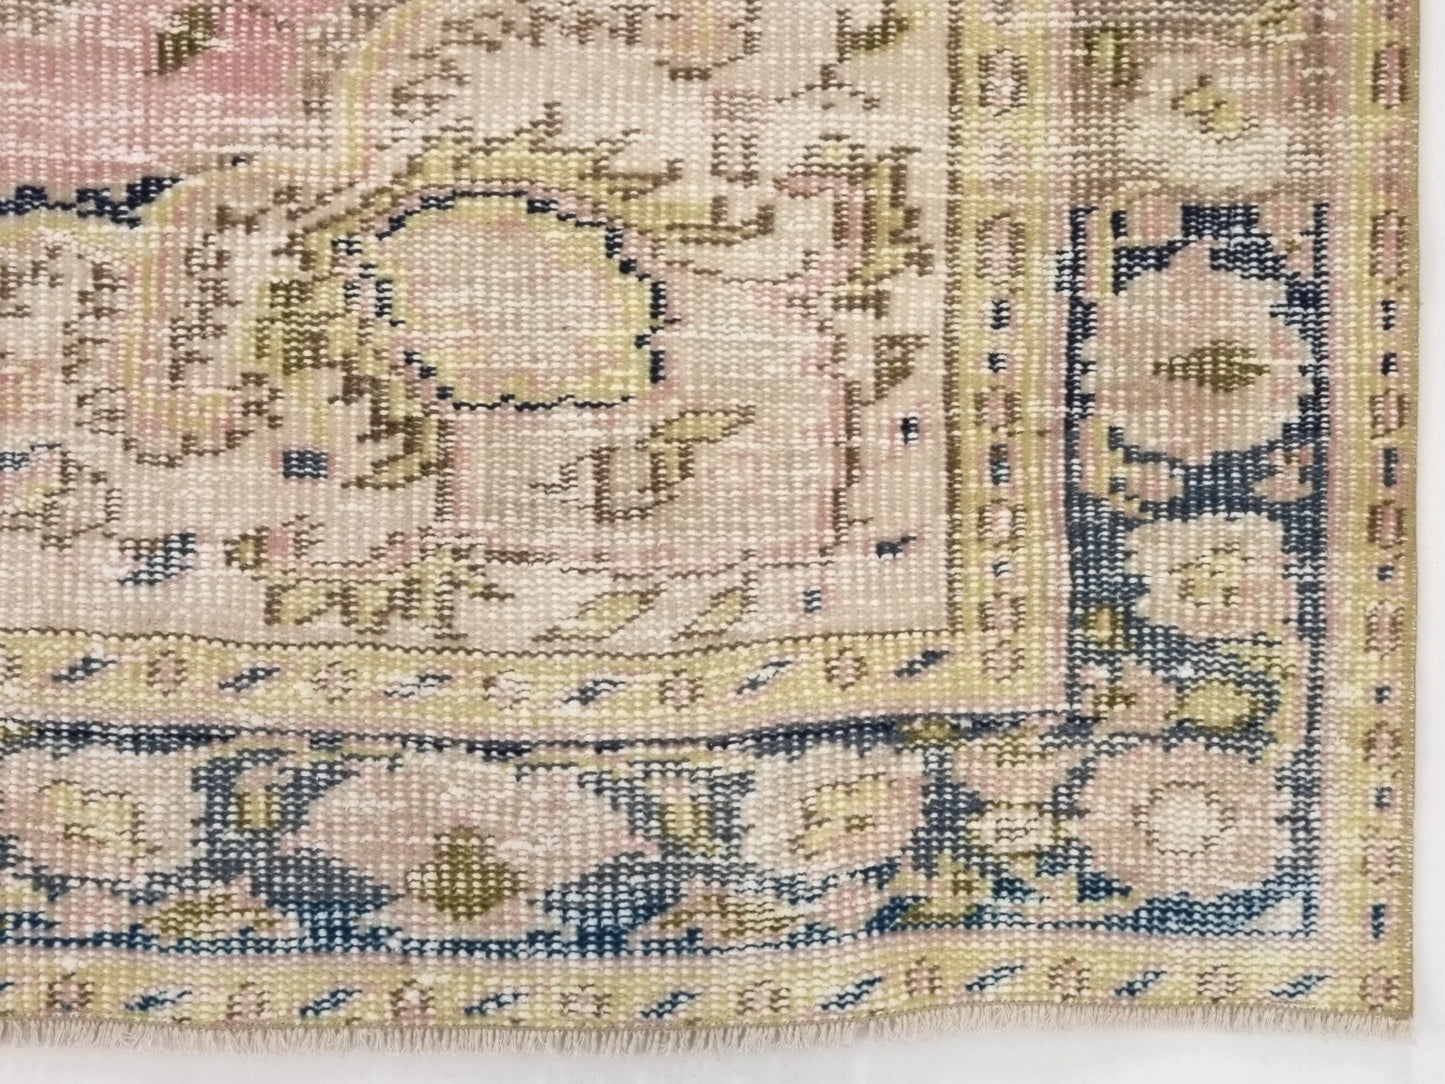 Pink Turkish rug, Oushak rug, Medallion Area Rug, Carpet rug, Vintage Rug 5x8, Eclectic Decor, Antique rug, Natural rug, Handmade rug,10216